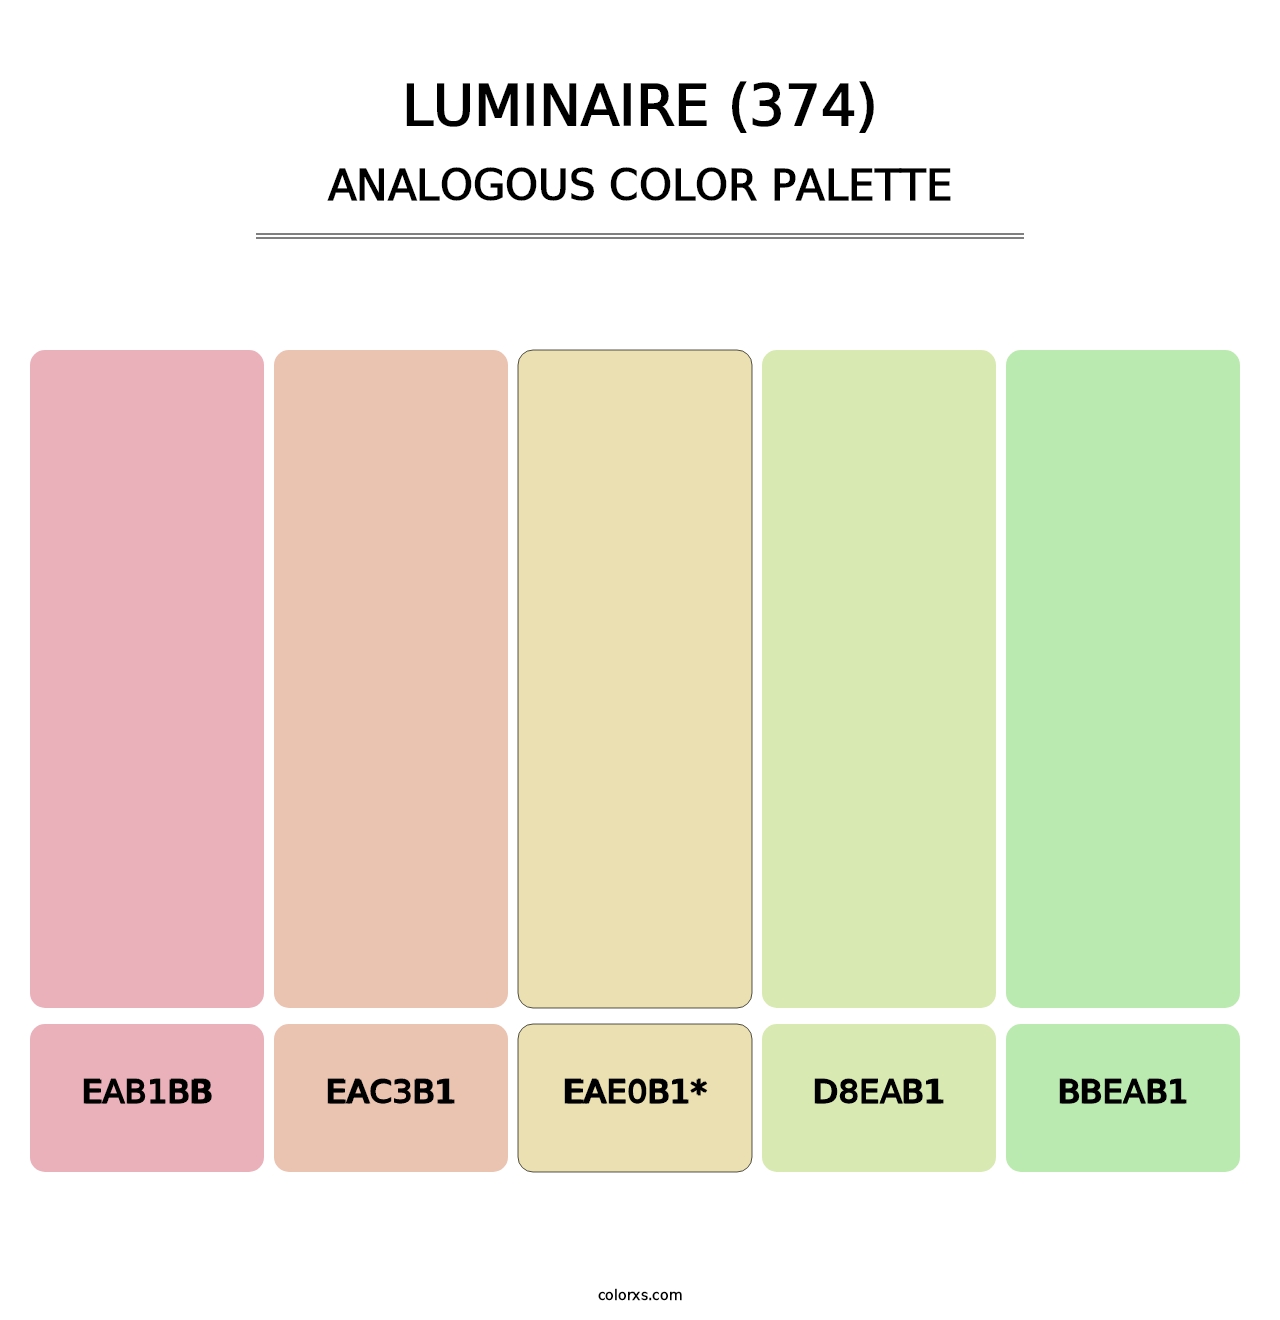 Luminaire (374) - Analogous Color Palette